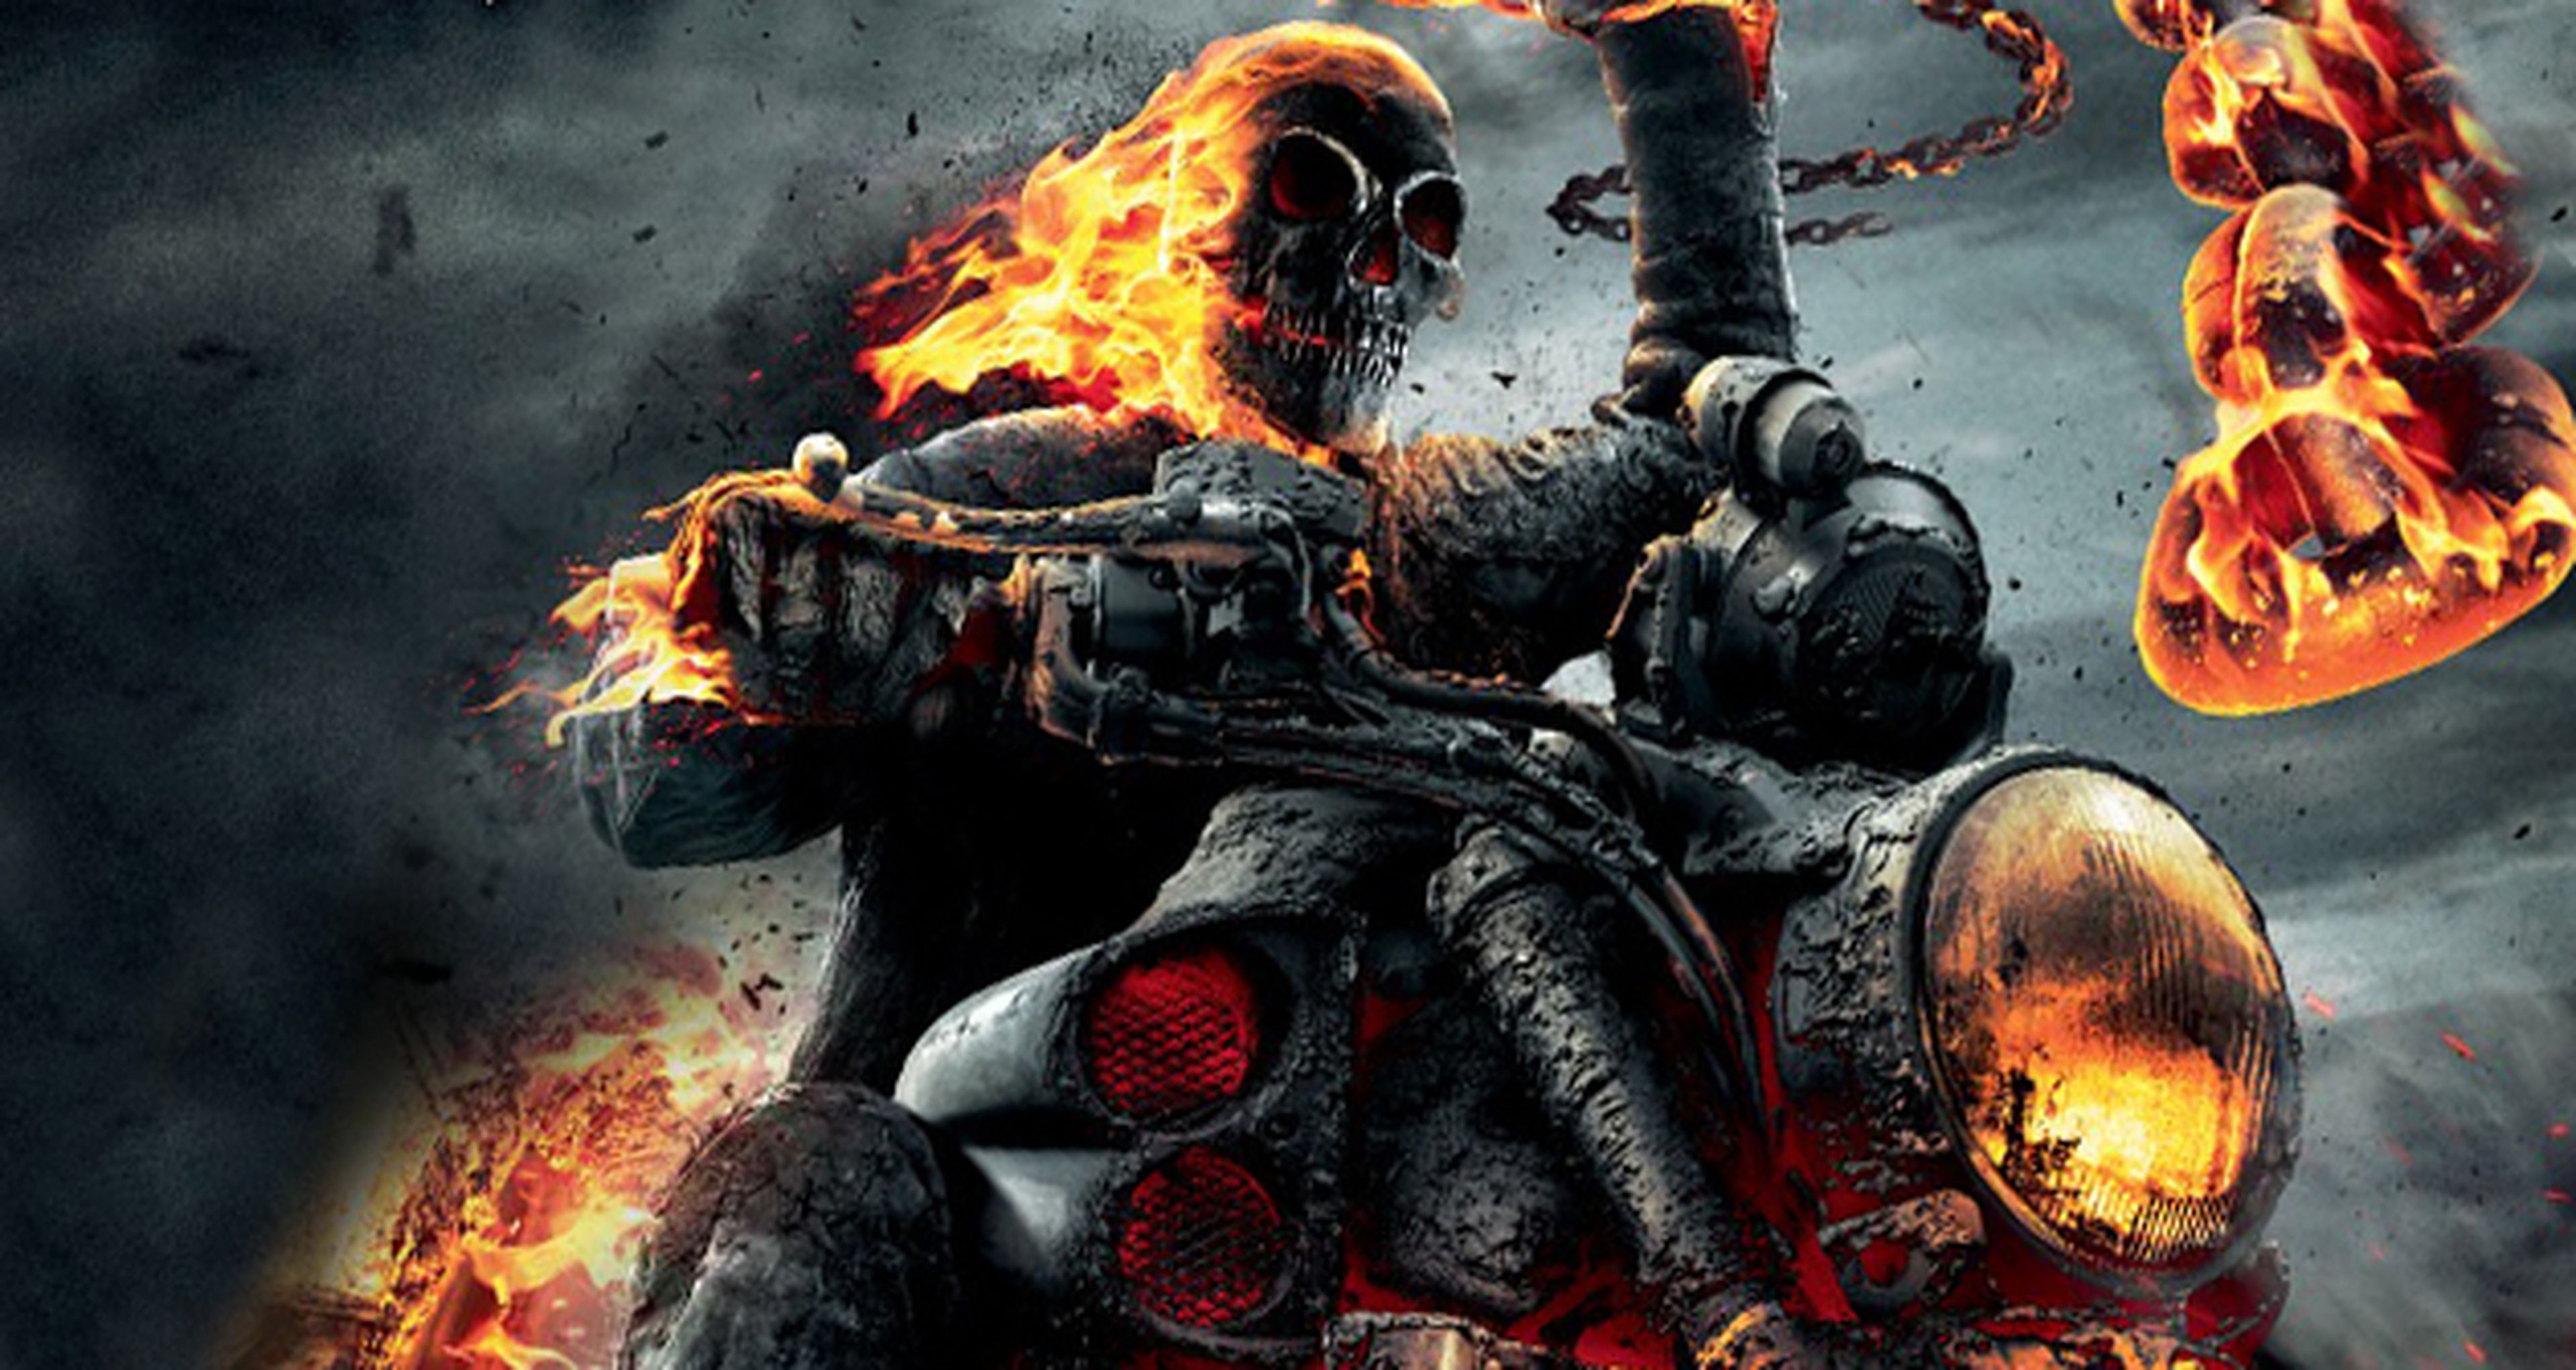 Cine de superhéroes: Ghost Rider, espíritu de venganza